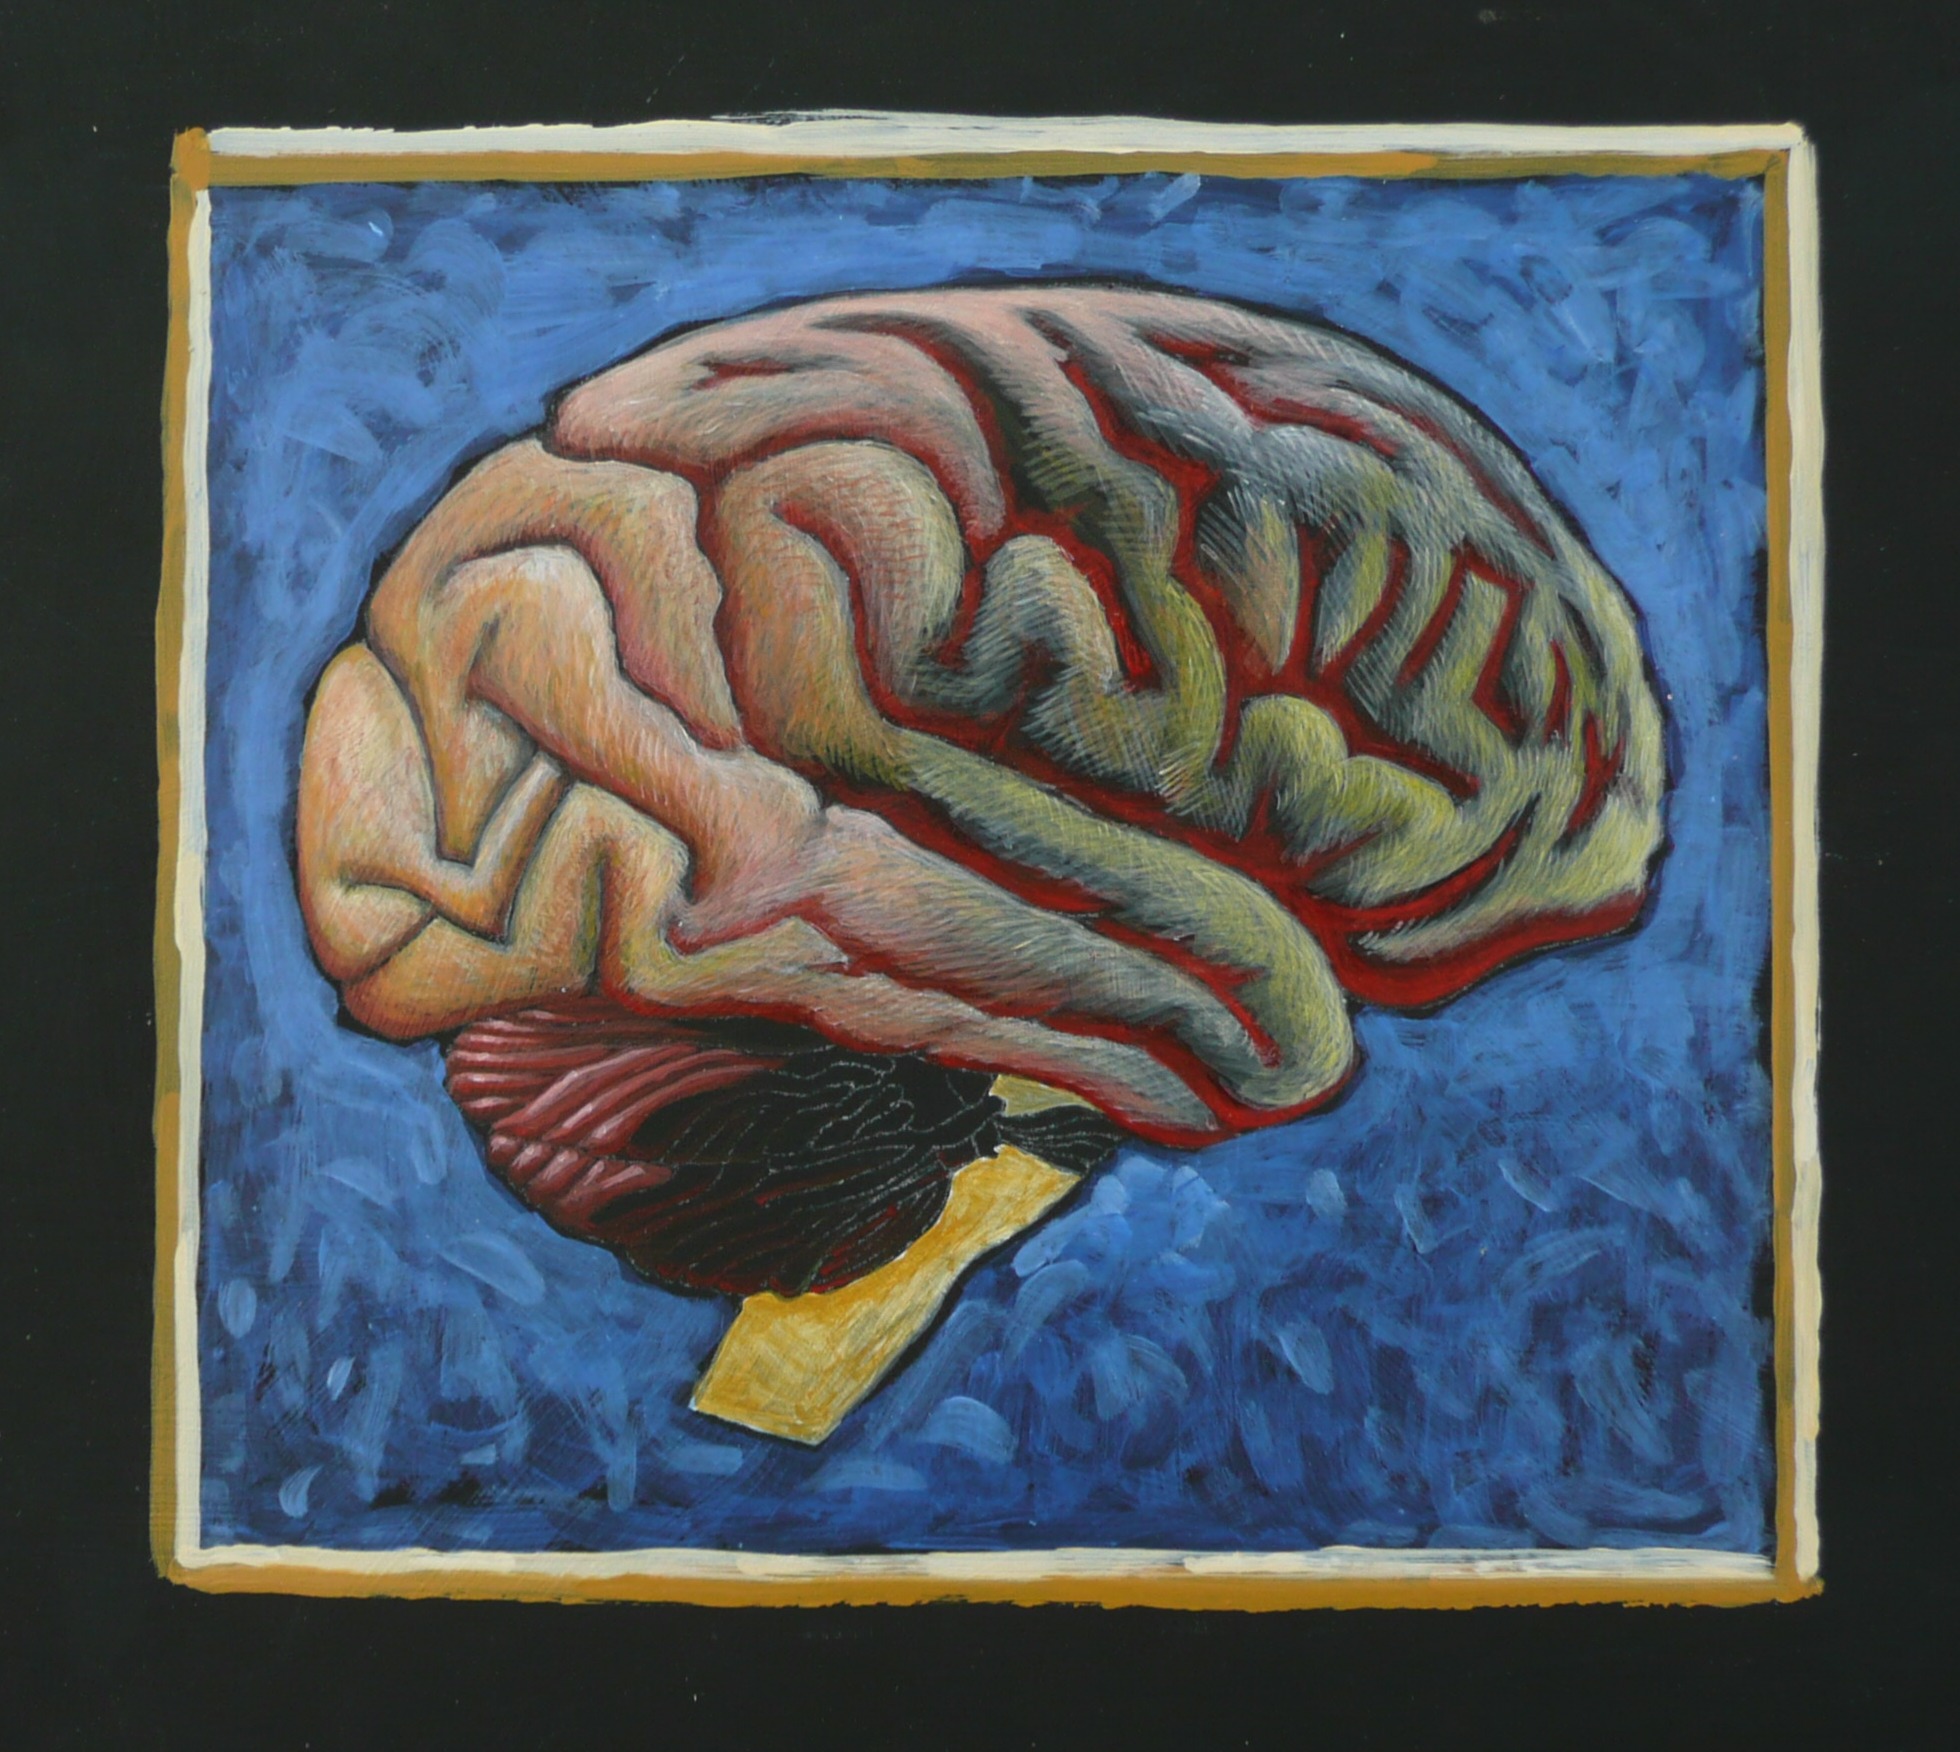 arylic brain painting